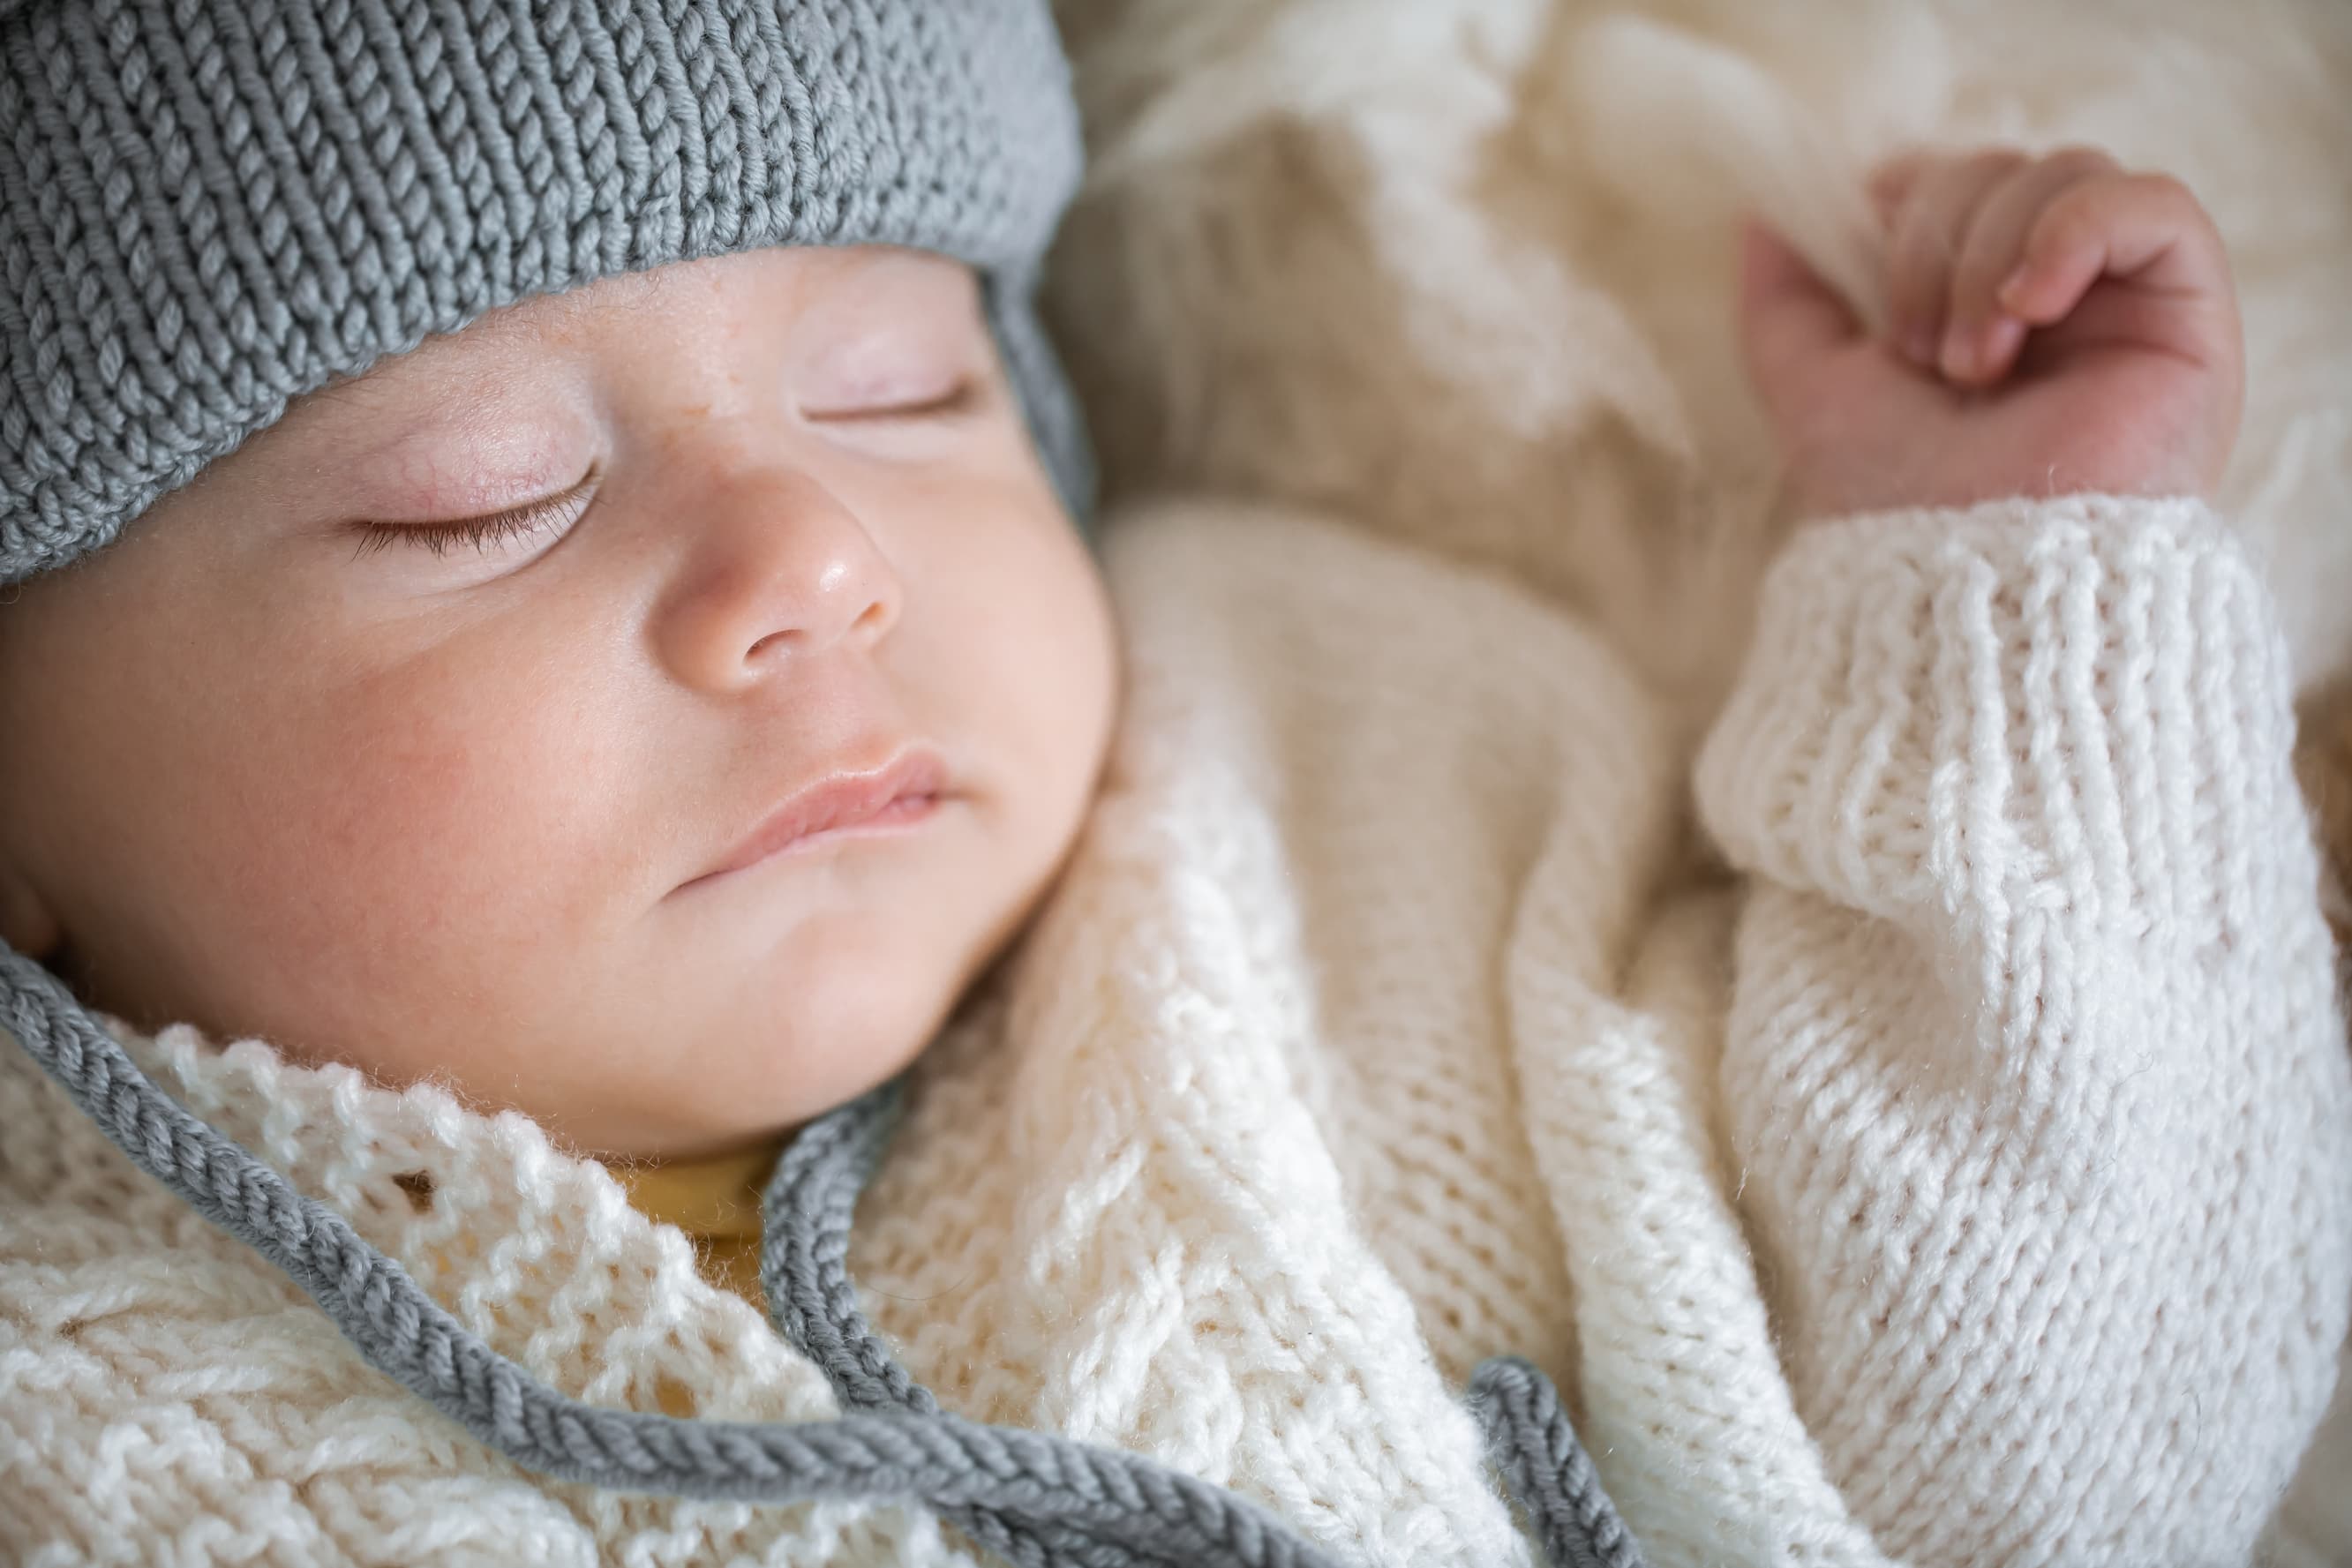 Come far dormire i bambini: consigli pratici per una buona routine di sonno